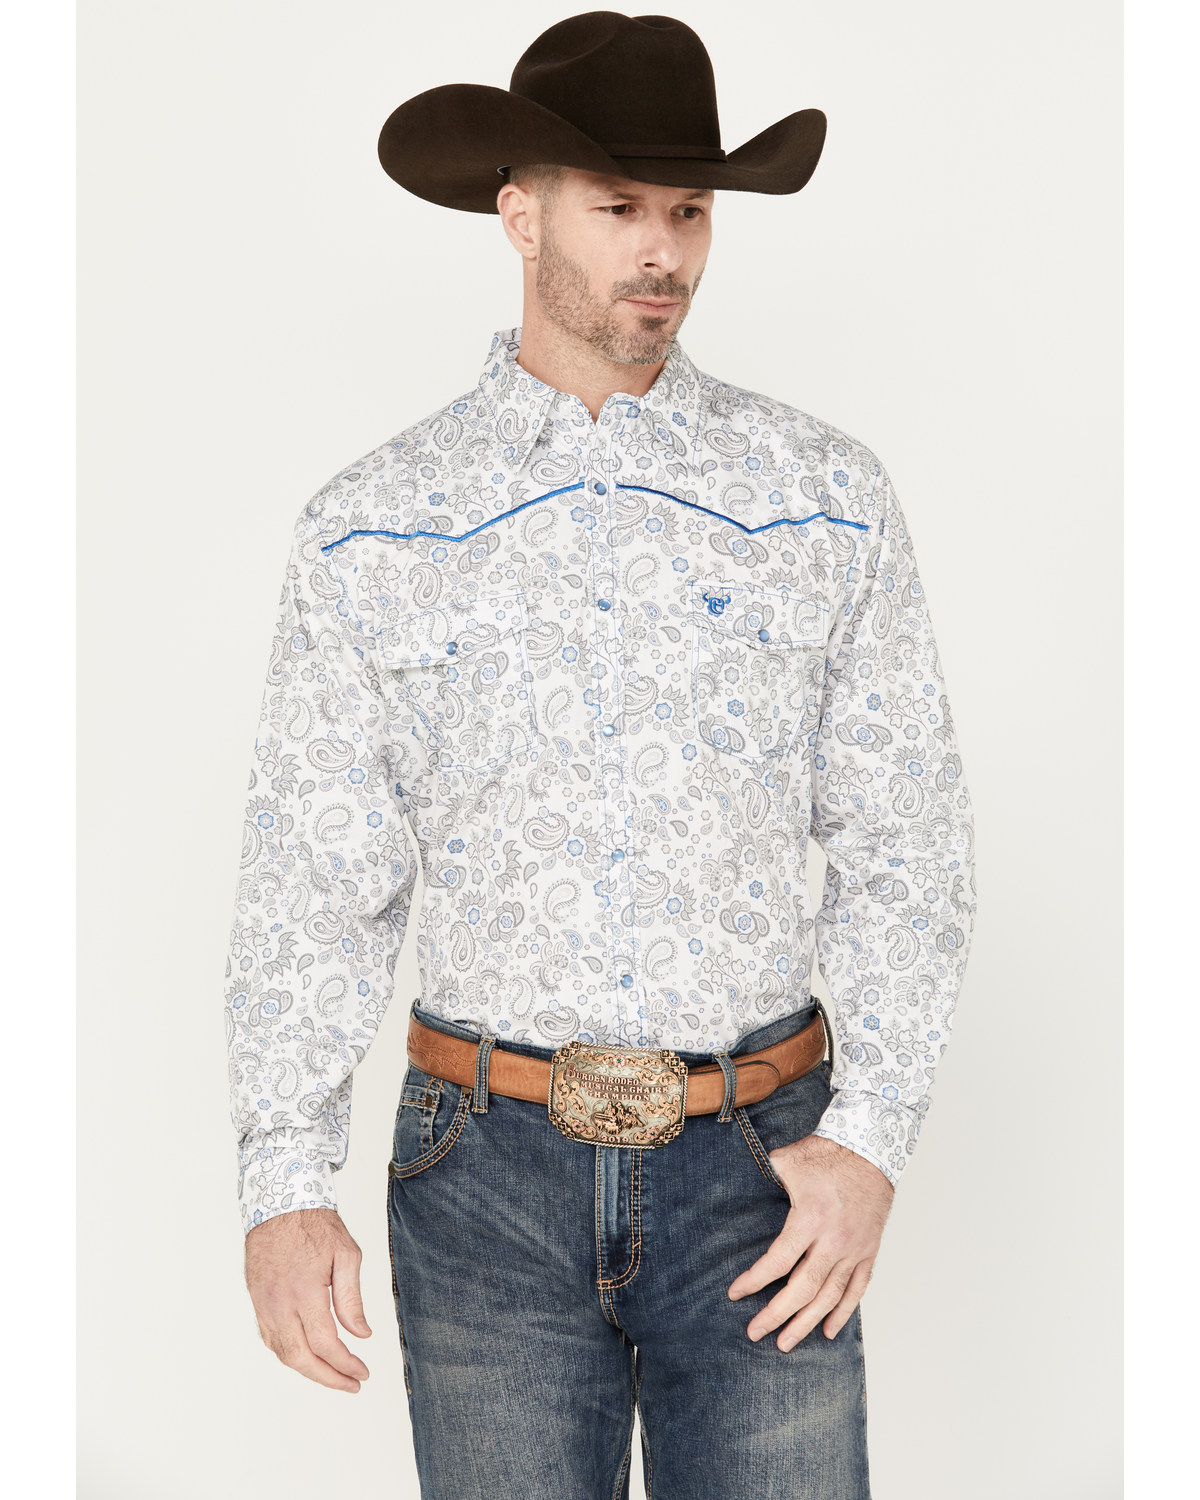 Cowboy Hardware Men's Mixed Paisley Print Long Sleeve Pearl Snap Western Shirt